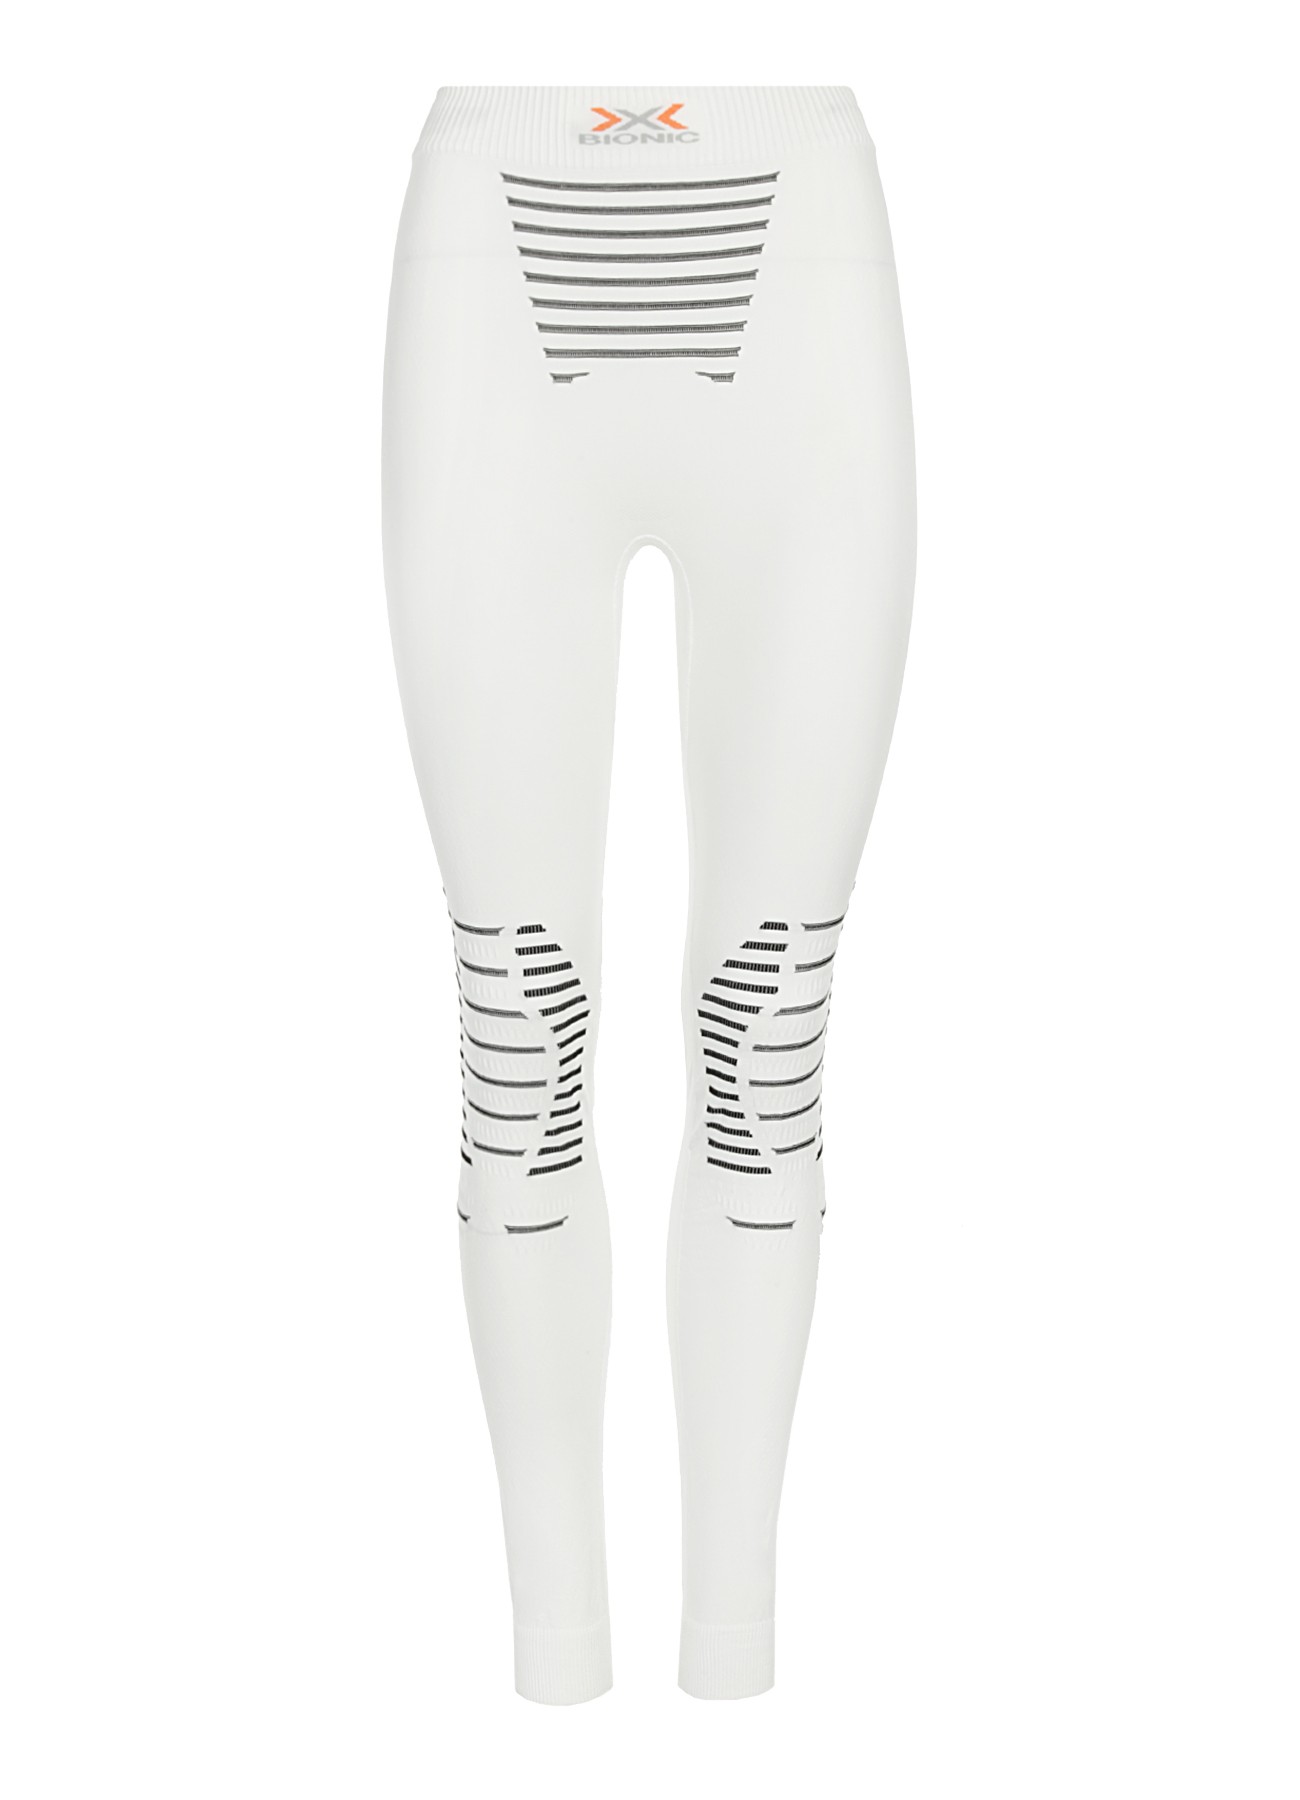 Белье: термолеггинсы женские INVENT PANTS LONG X-BIONIC для занятий спортом